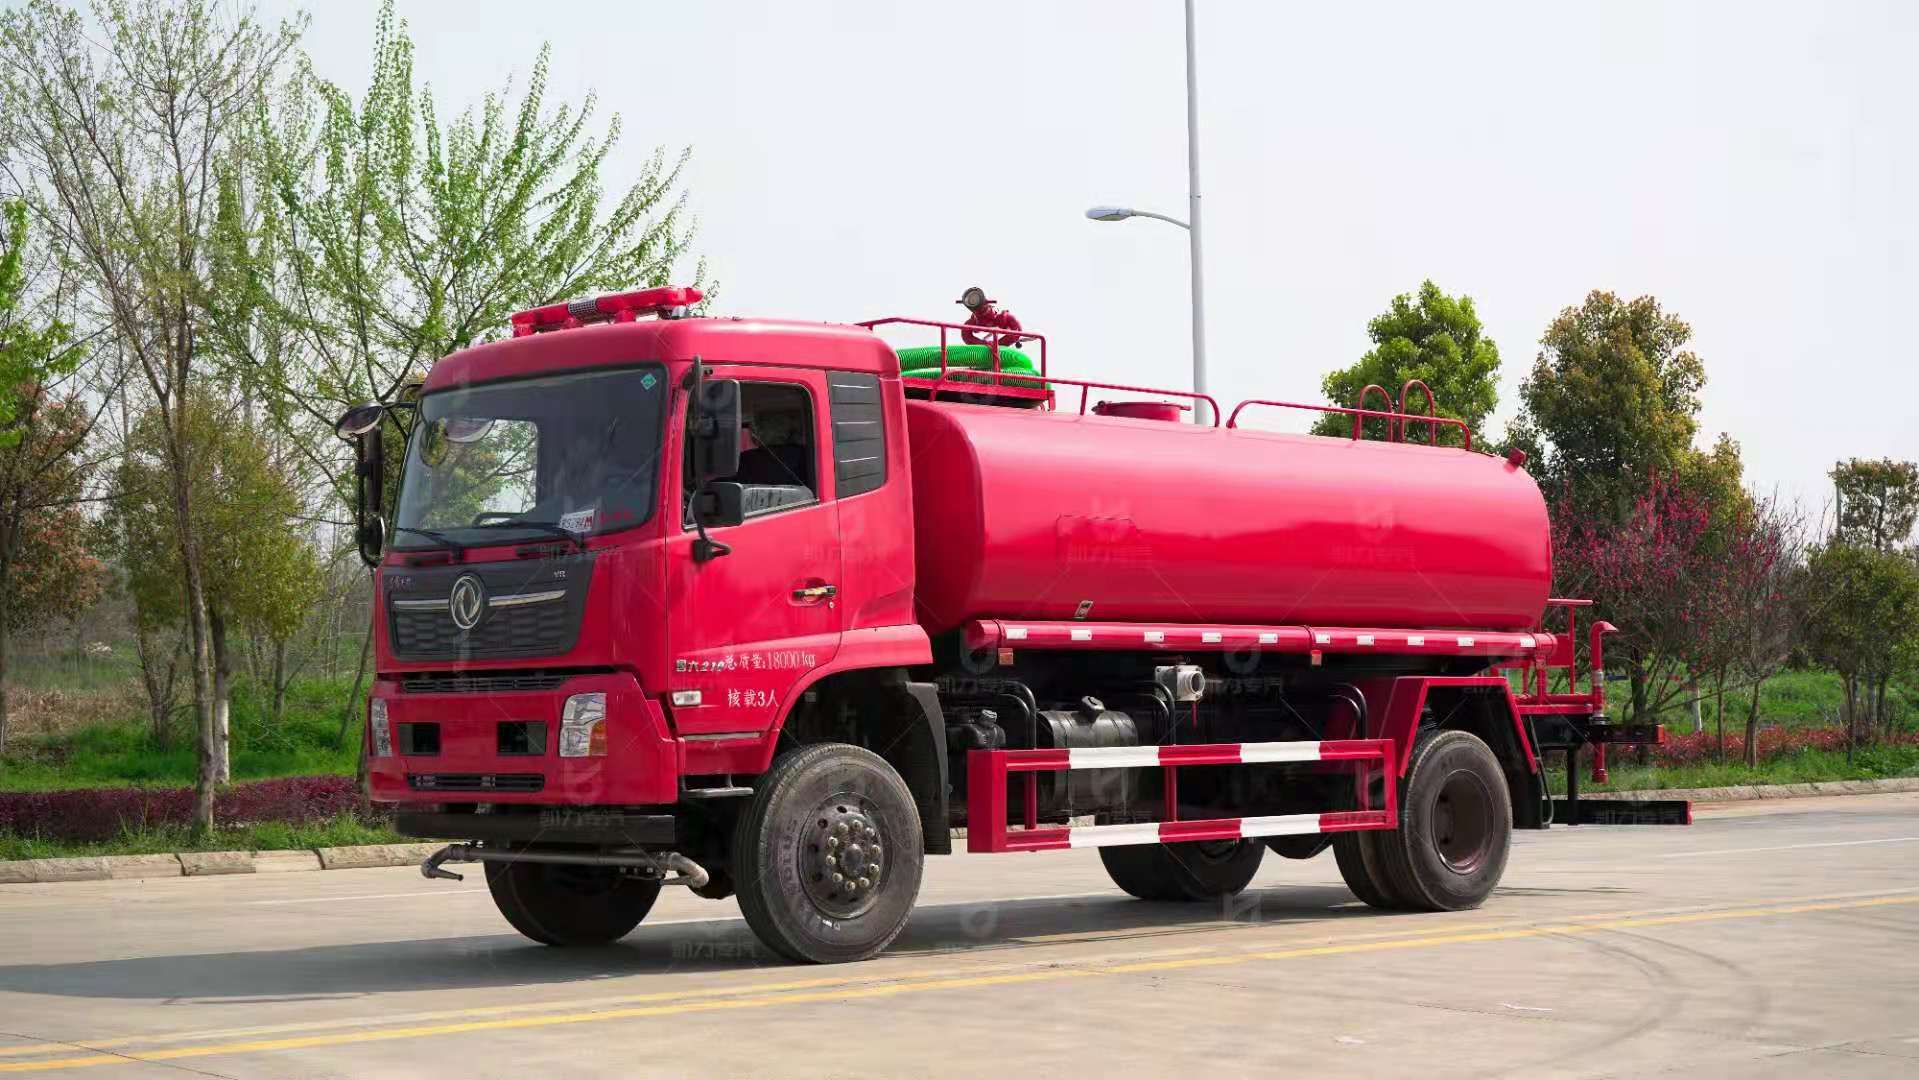 宁河5吨水罐消防车